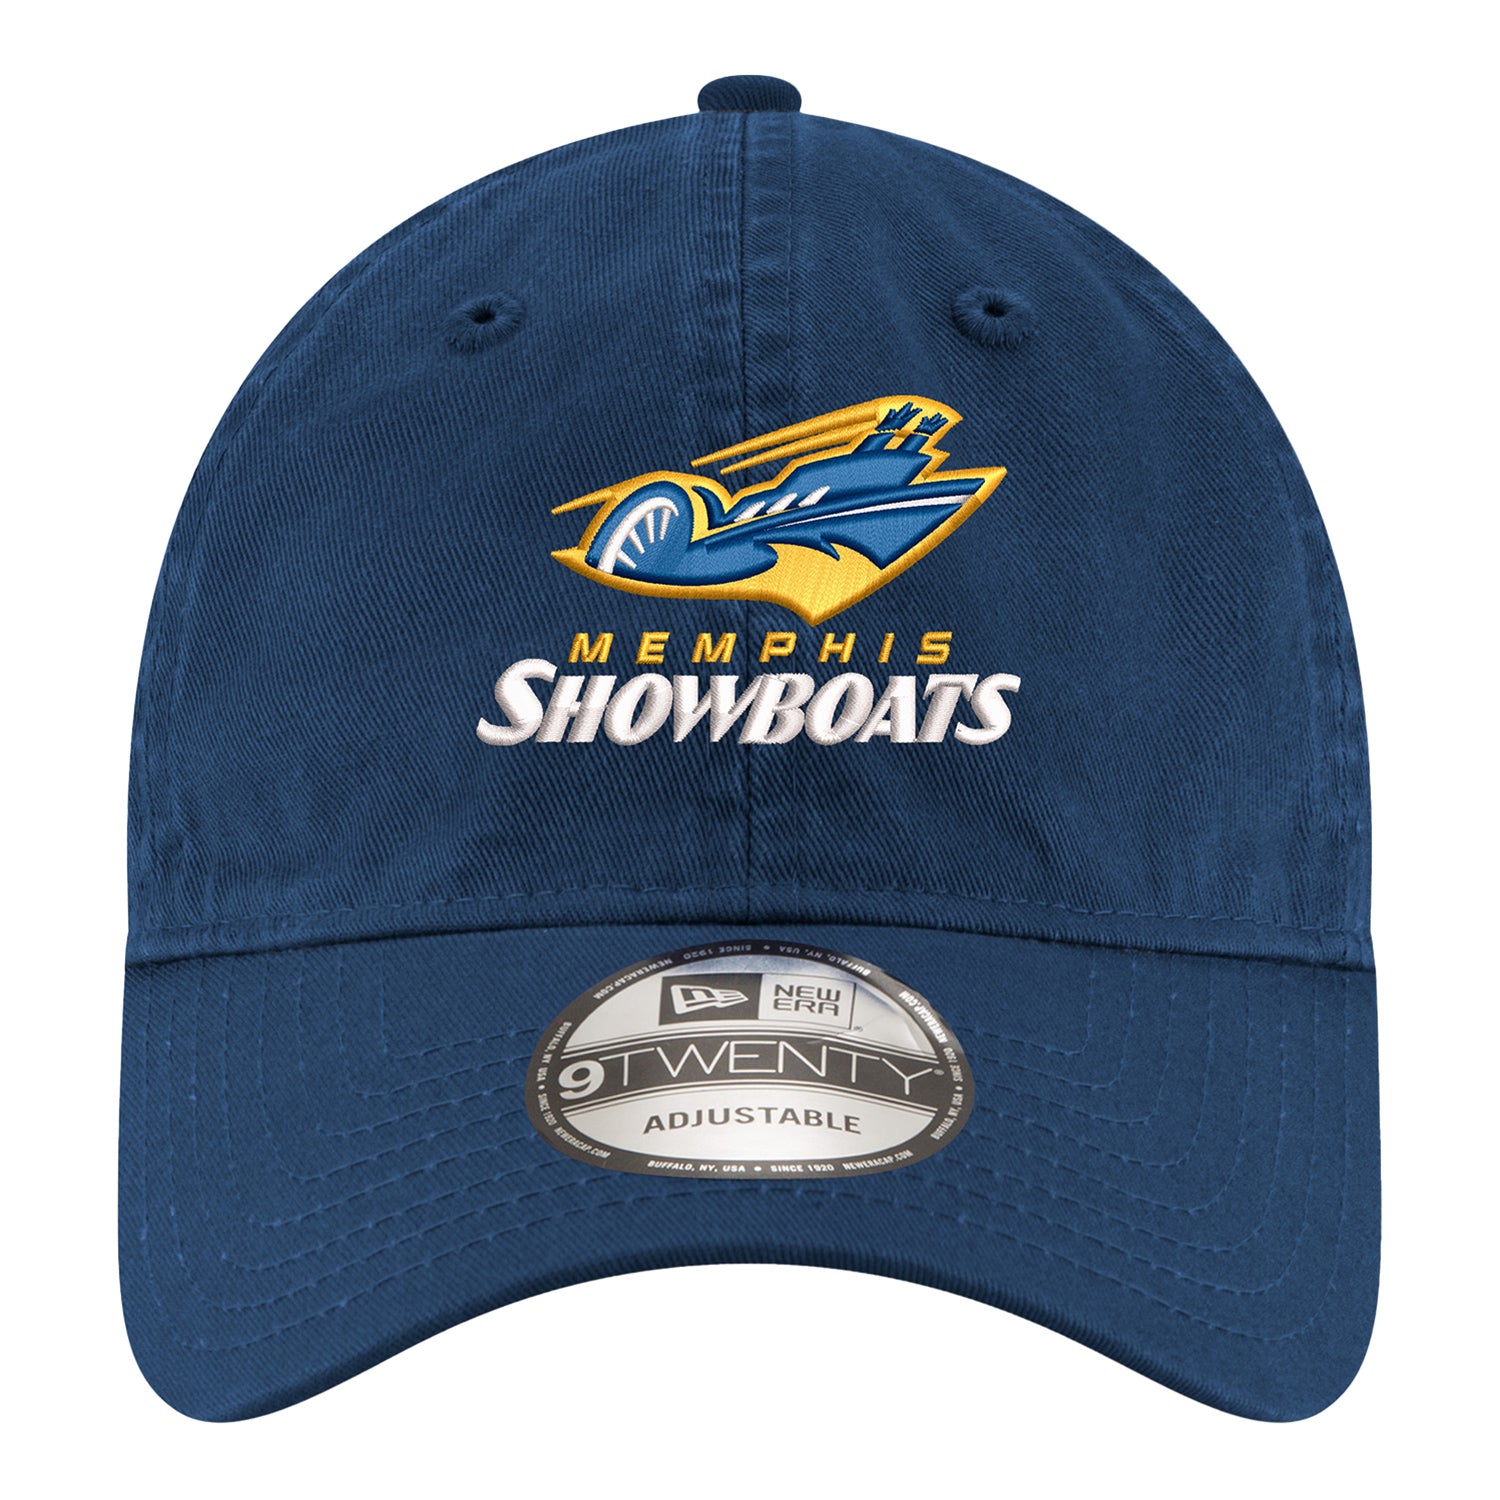 New Era 9TWENTY Memphis Showboats Adjustable Hat In Navy - Front View